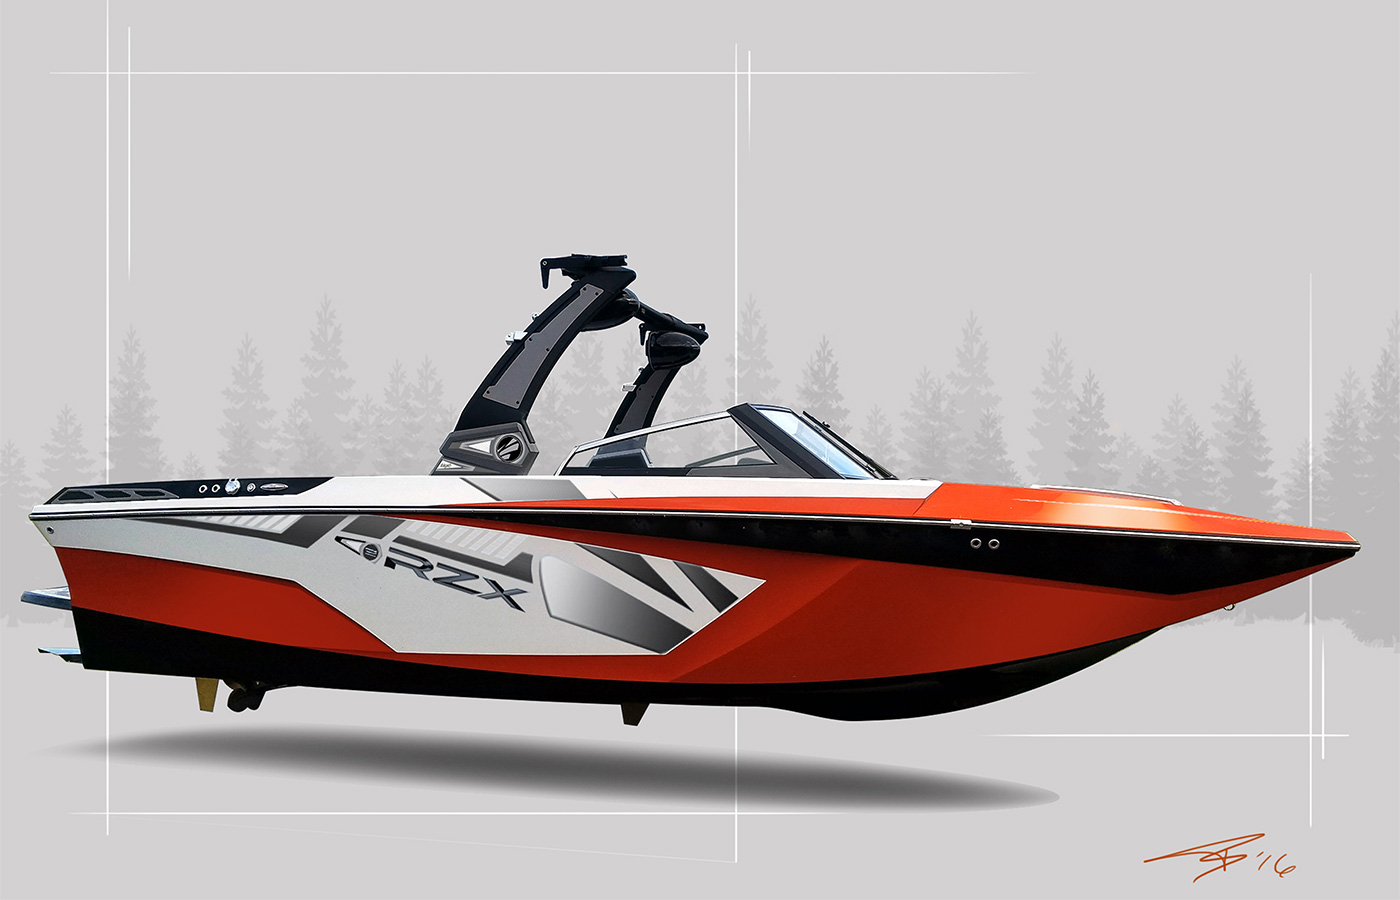 Slepica Studio: Boat Design & Render Services